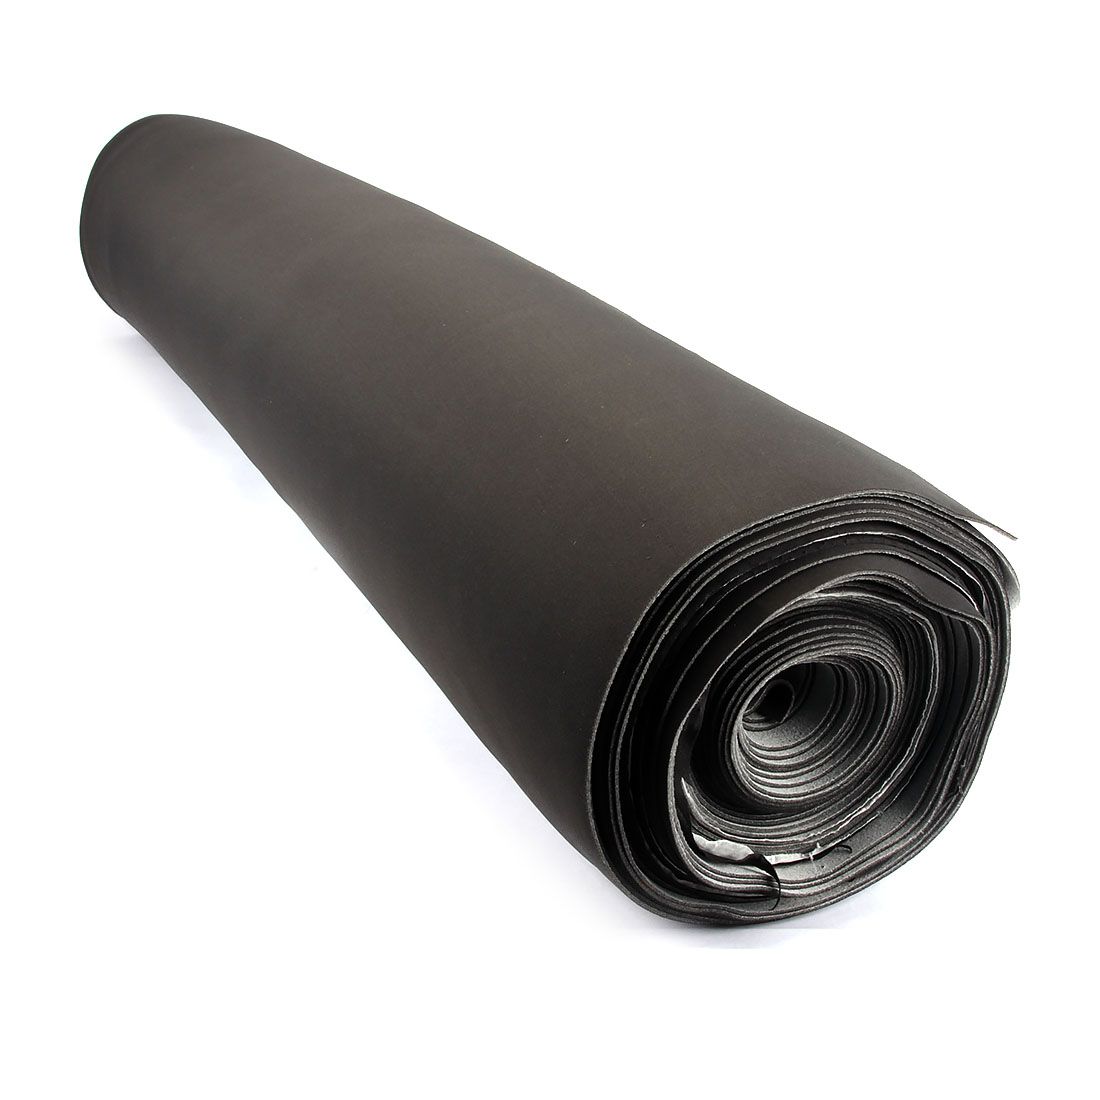 Потолочный материал ткань поролон для автомобиля черный 4мм 1.85м х 1п.м.